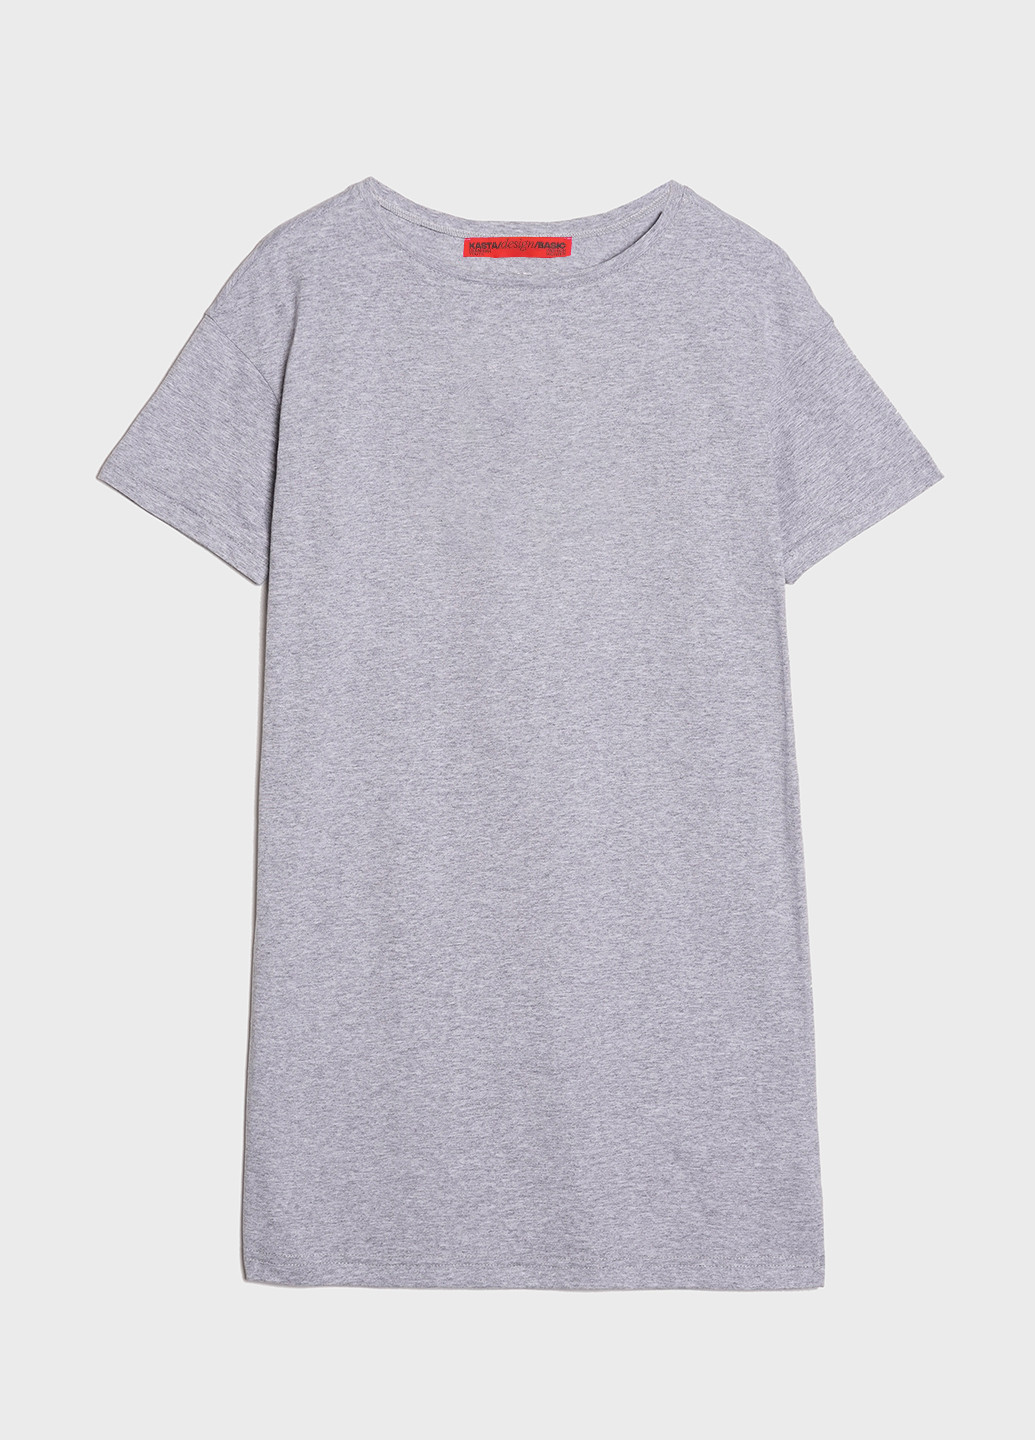 Сіра домашній футболка-сукня жіноча сукня-футболка KASTA design меланжева